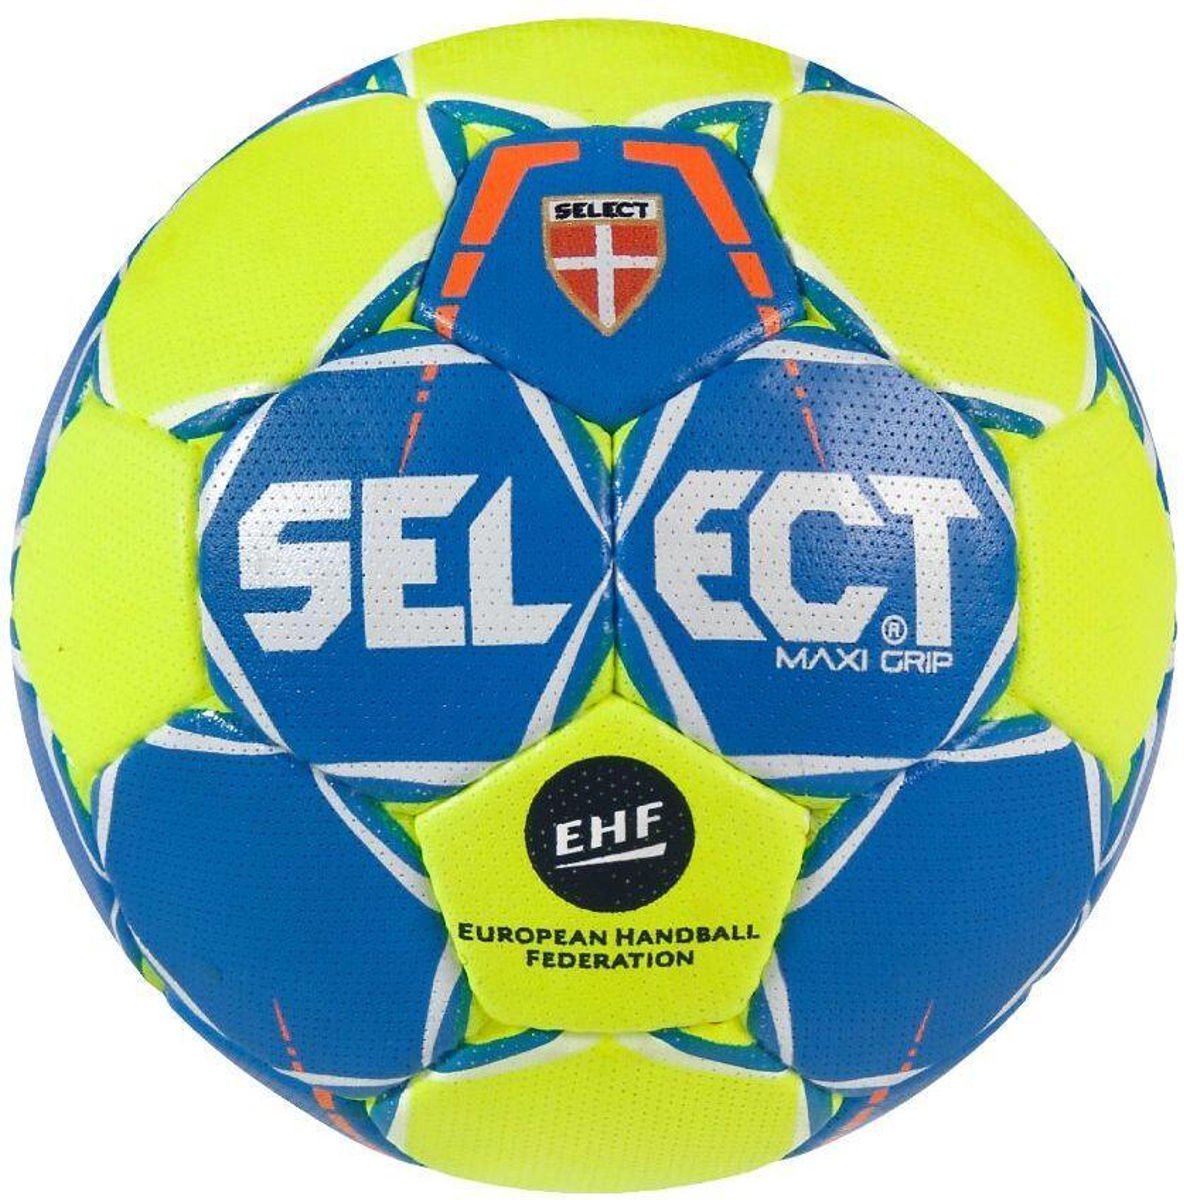 Select Maxi Grip Handbal - Blauw / Geel | Maat: MINI (0)